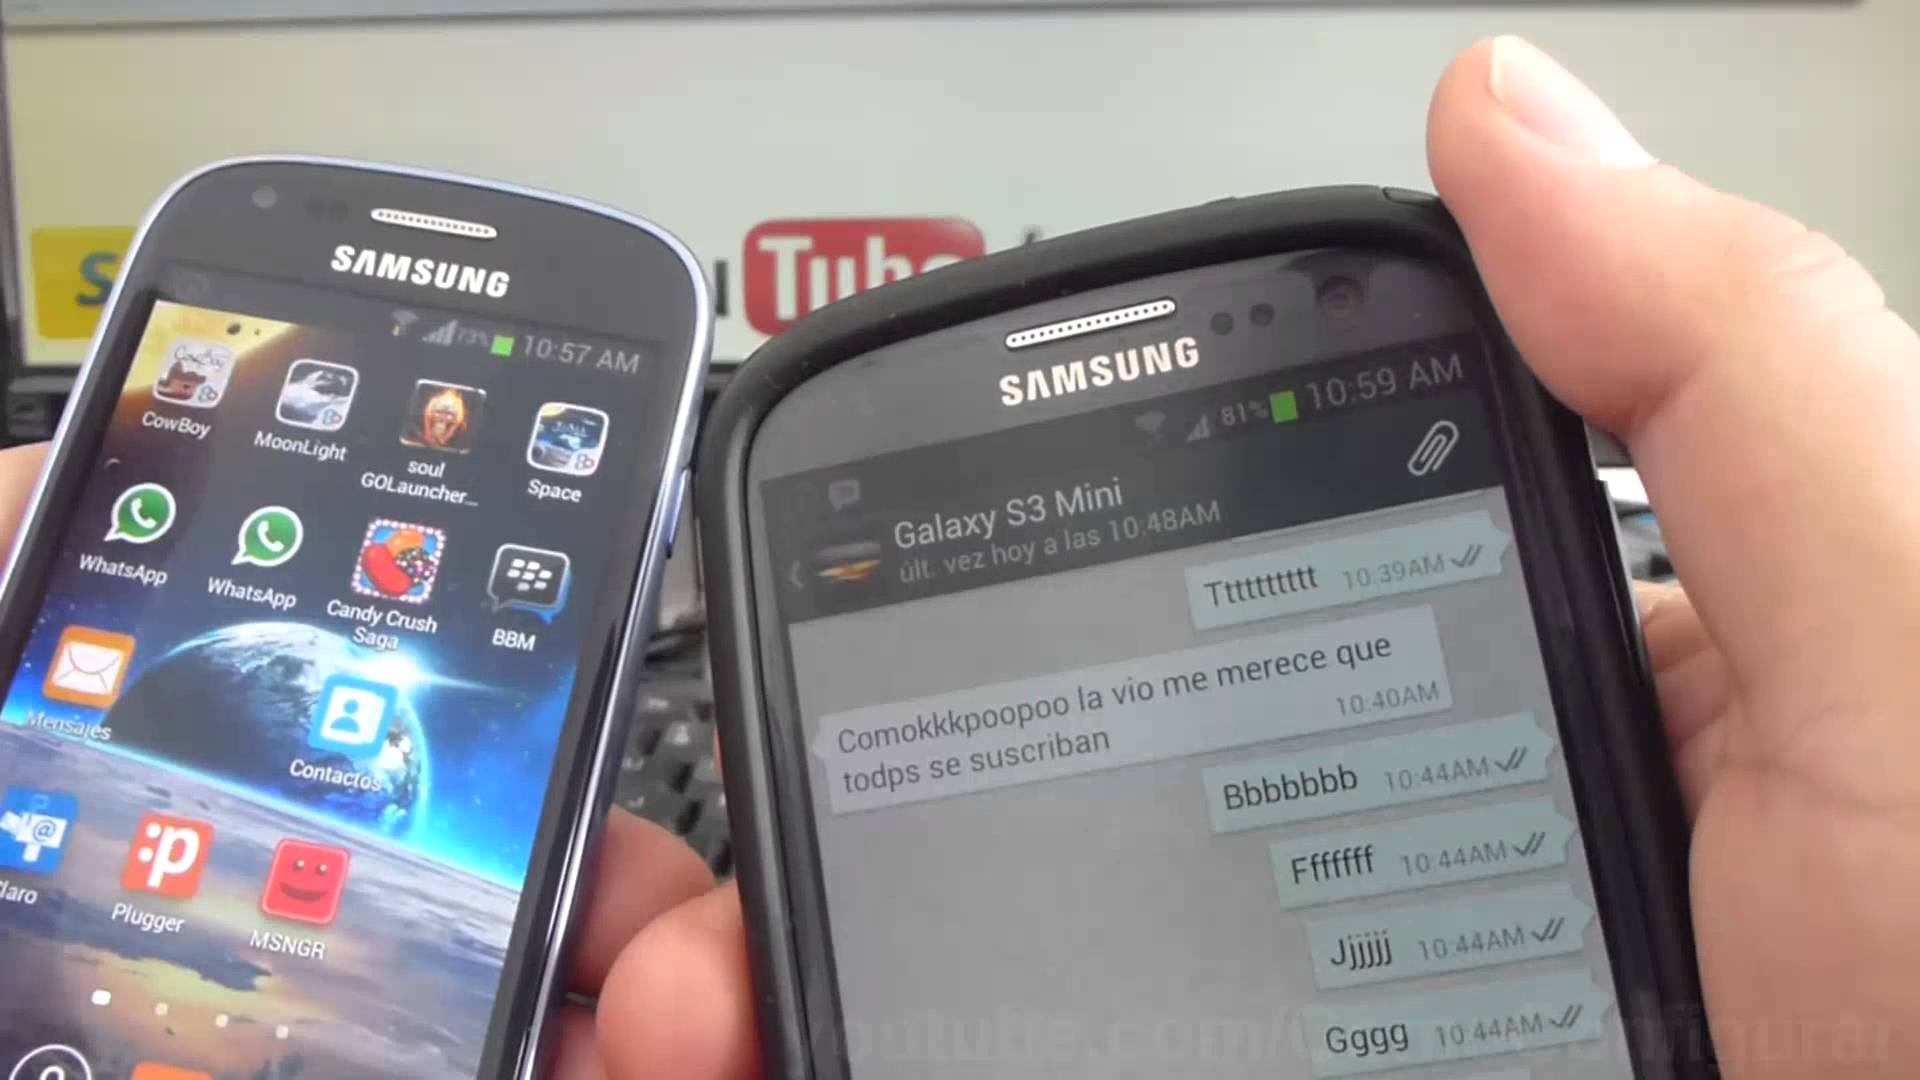 Мелодия ватсап самсунг. WHATSAPP Samsung. Вацап на самсунг галакси. Samsung Galaxy s4 Mini ватсап. Ватсап на самсунге фото.